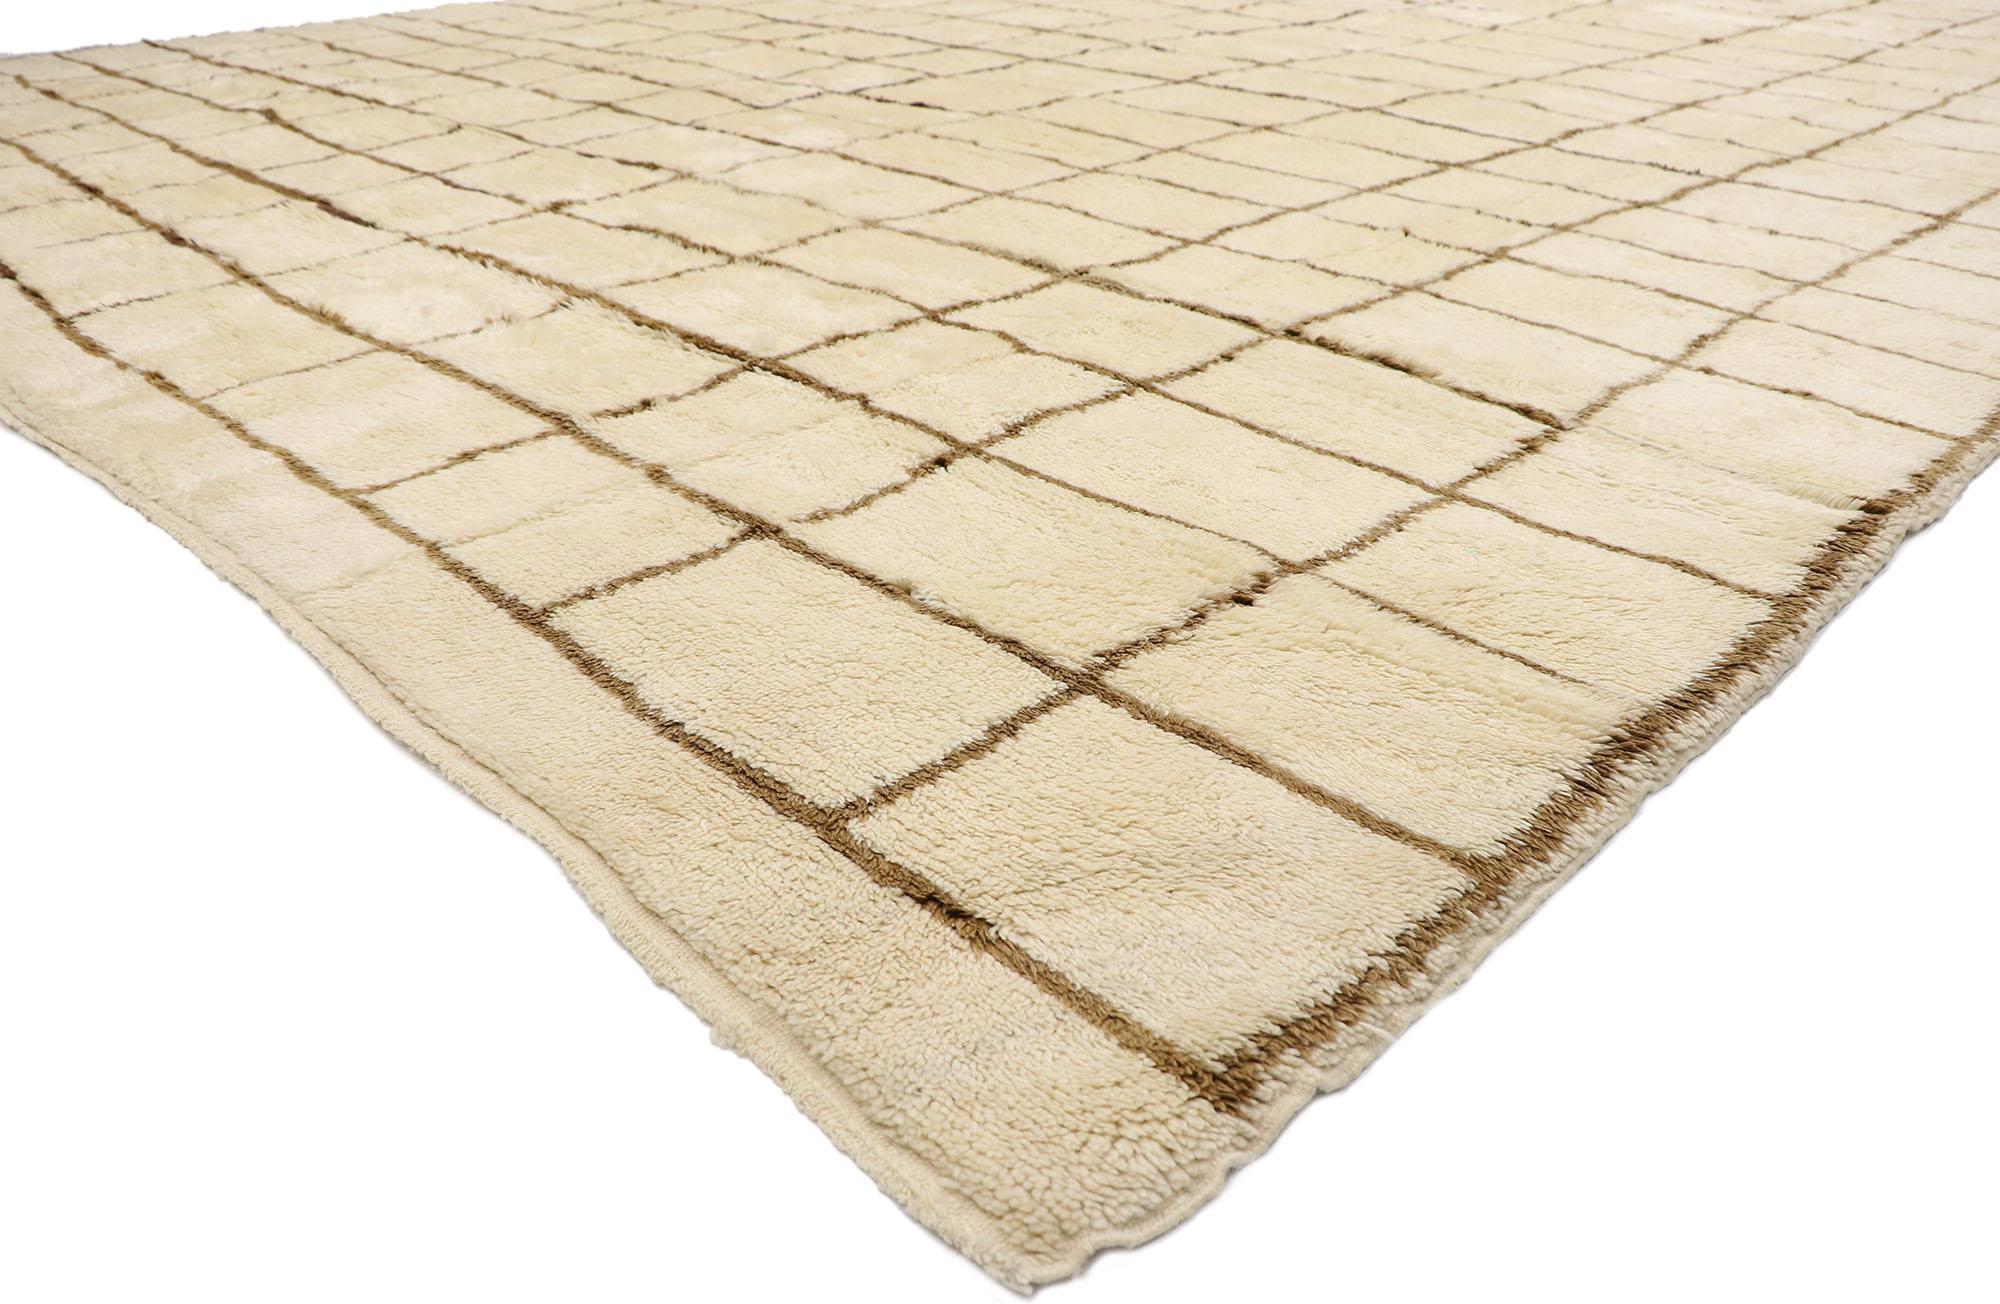 21143 Neutraler marokkanischer Berberteppich in Übergröße, 13'07 x 17'11.
Dieser handgeknüpfte marokkanische Berberteppich aus Wolle spiegelt Elemente des Shibui mit unglaublichen Details und Texturen wider und ist schlicht und subtil. Die karierte